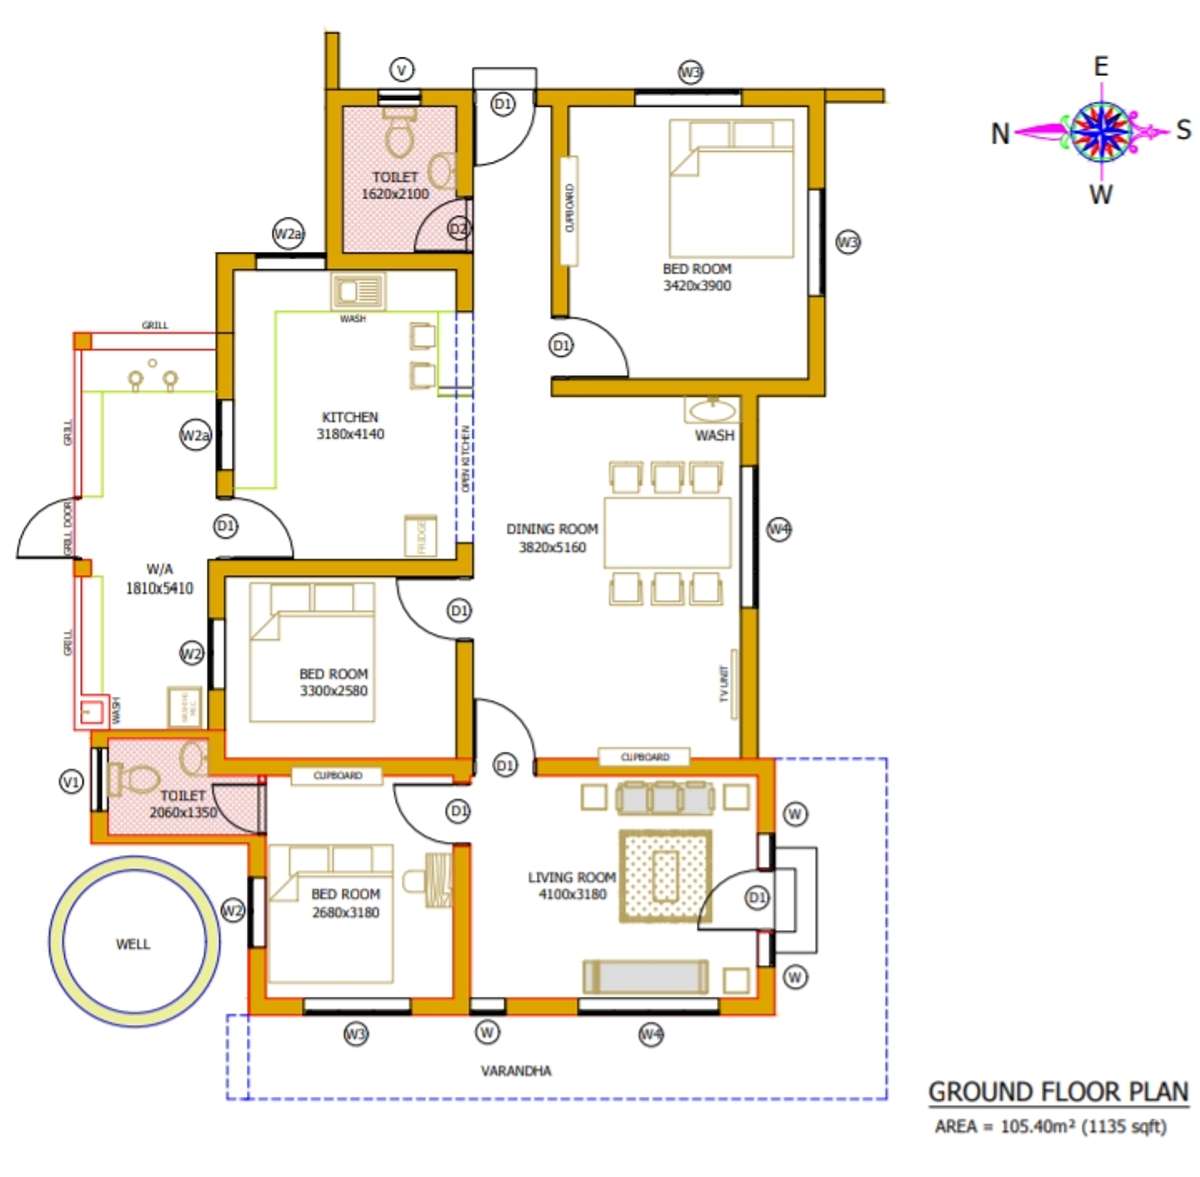 #Floor Plan 1135 Sqft
#Ground Floor
#Open Kitchen 